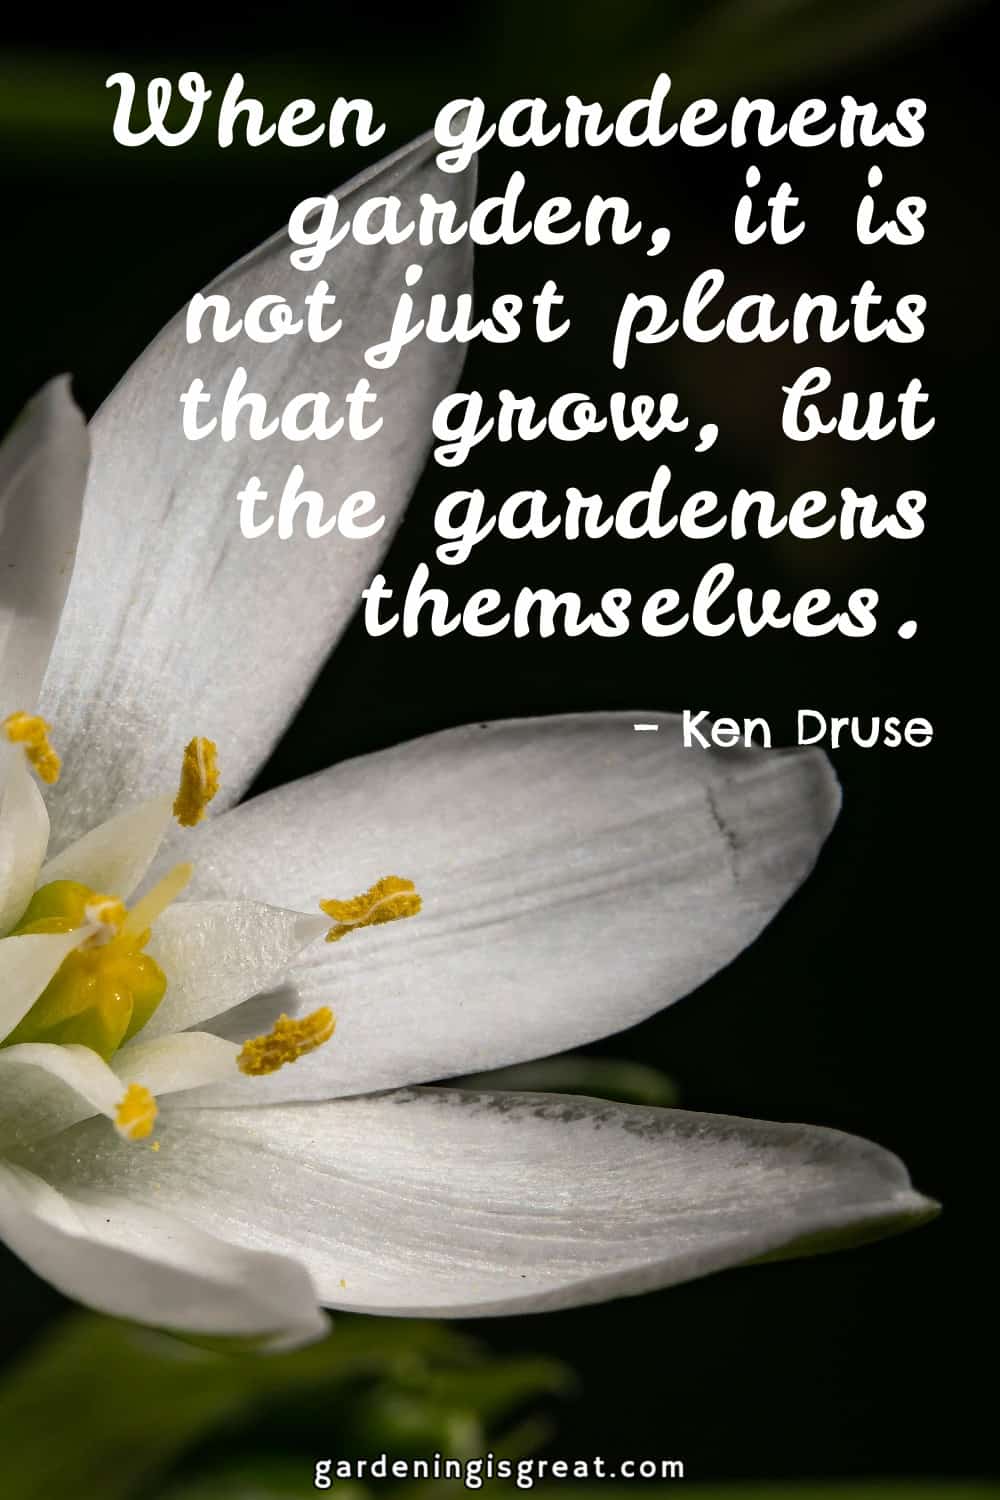 “When gardeners garden, it is not just plants that grow, but the gardeners themselves.” – Ken Druse